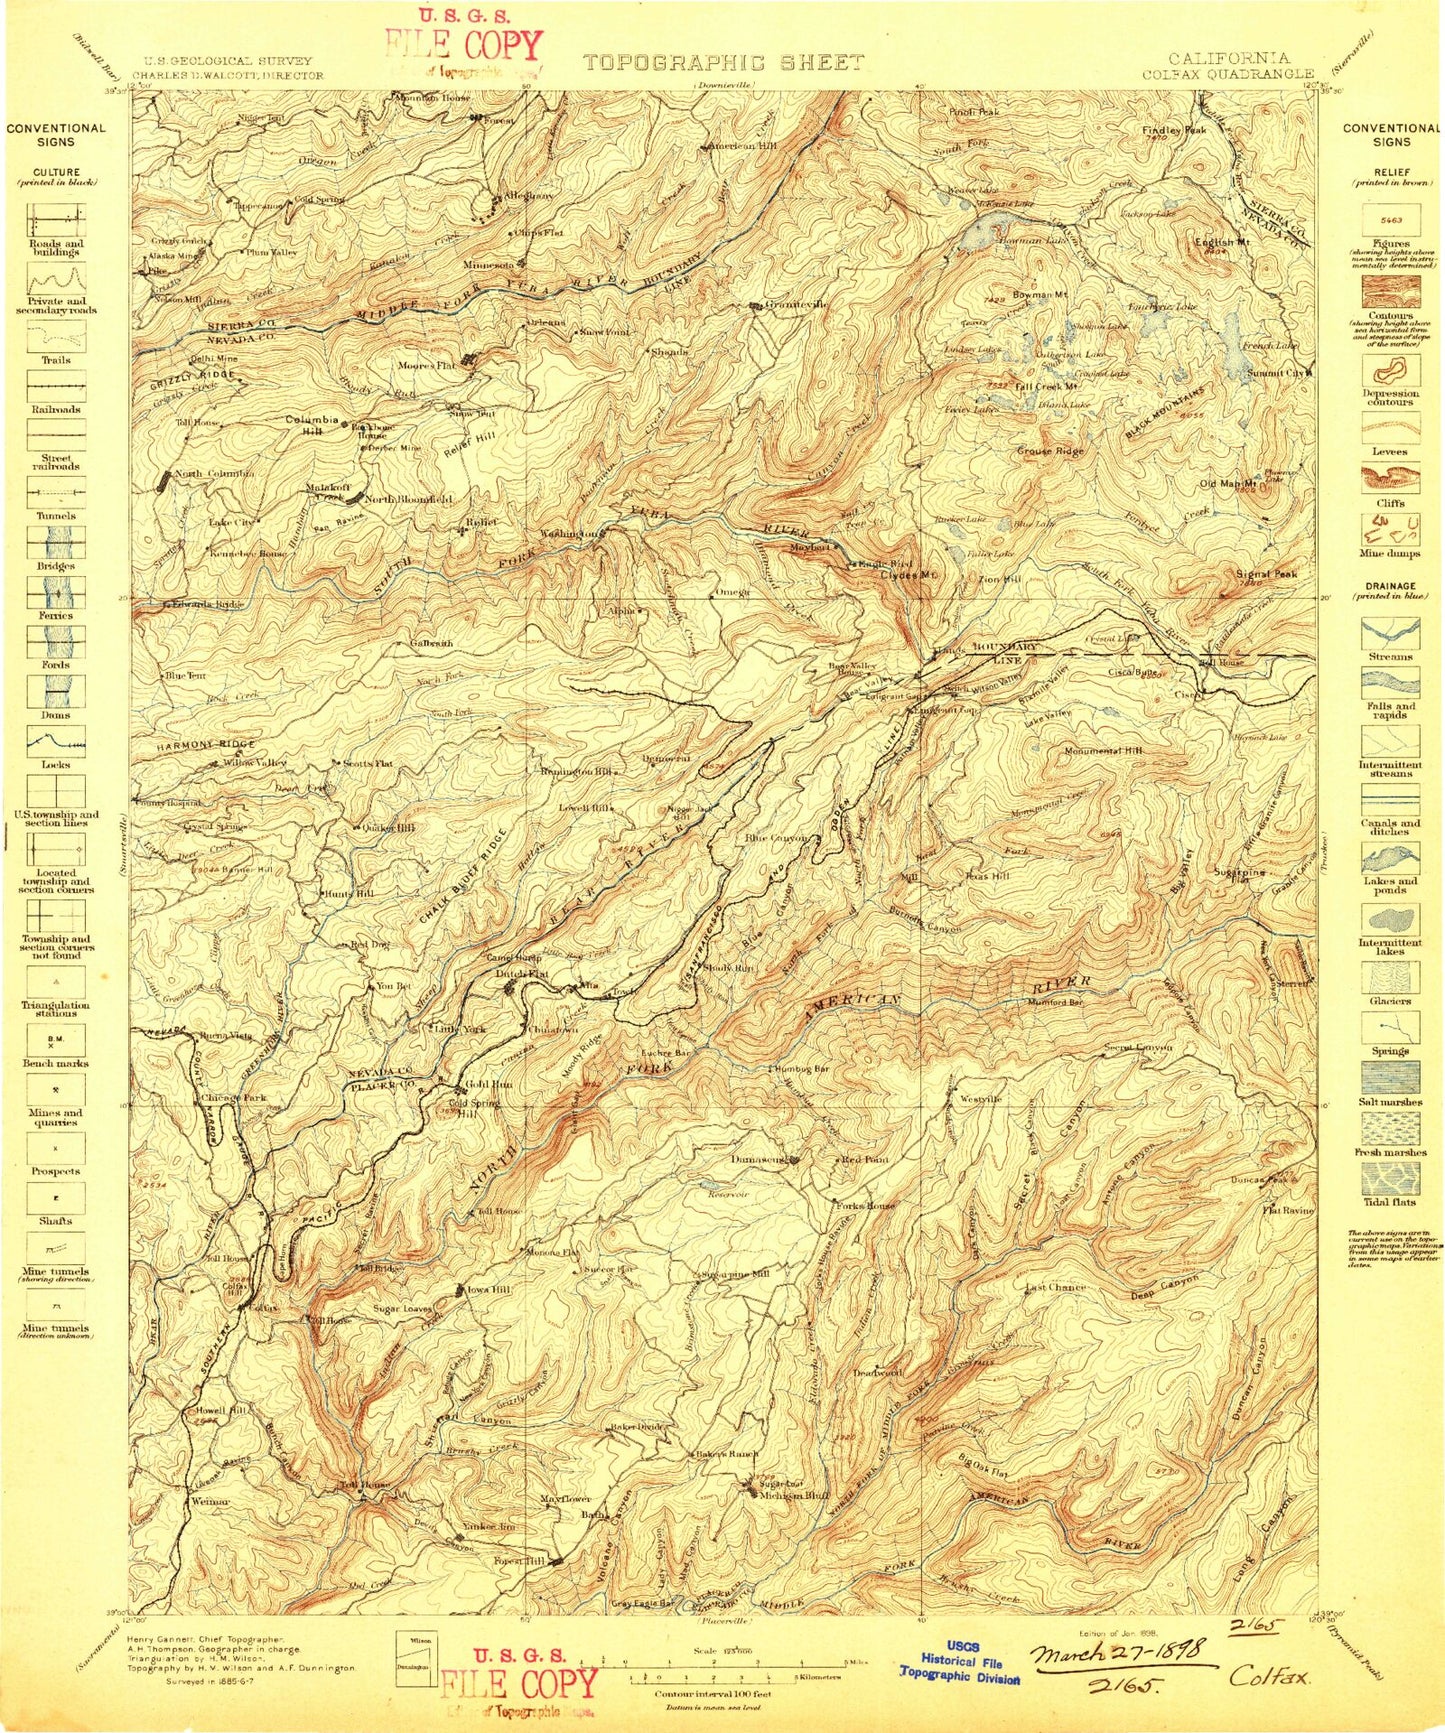 Historic 1898 Colfax California 30'x30' Topo Map Image